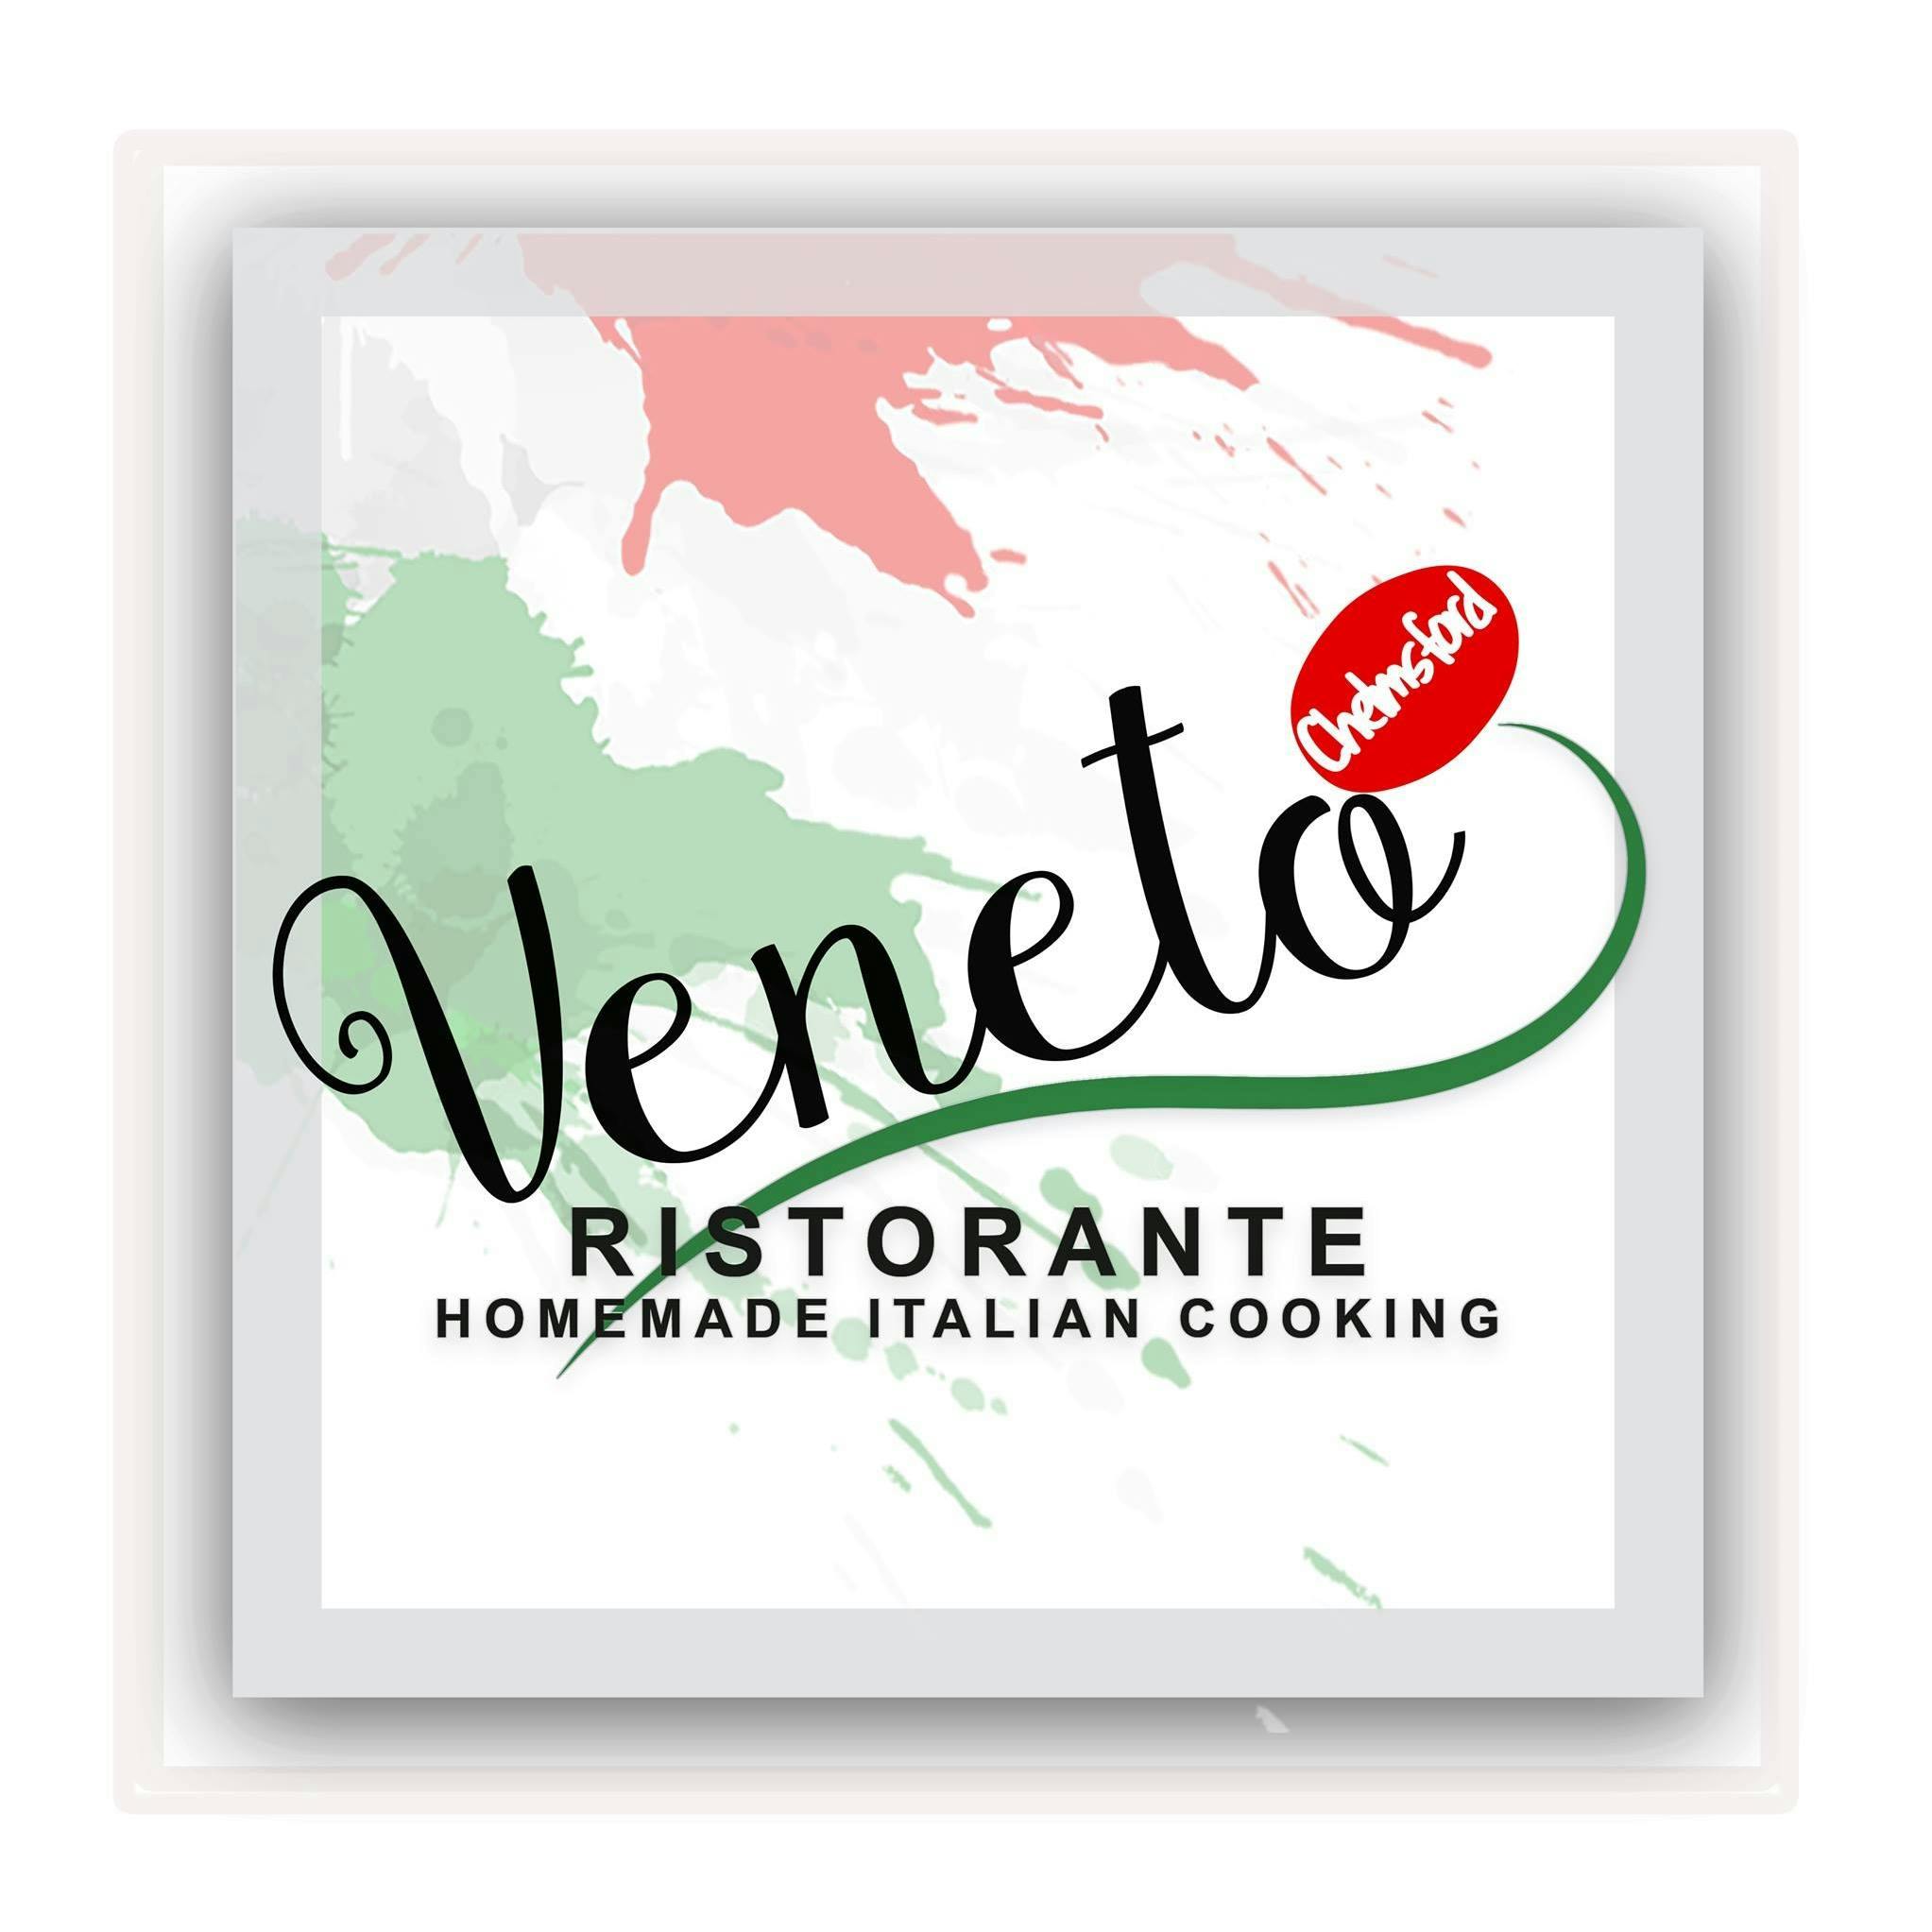 Veneto Ristorante & Pizza